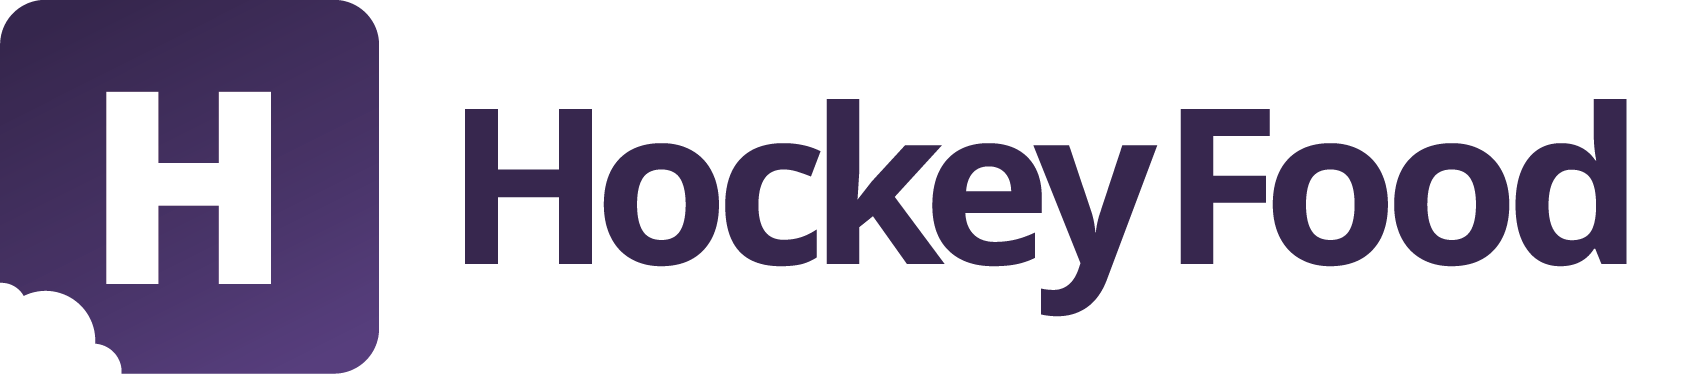 HockeyFood logo